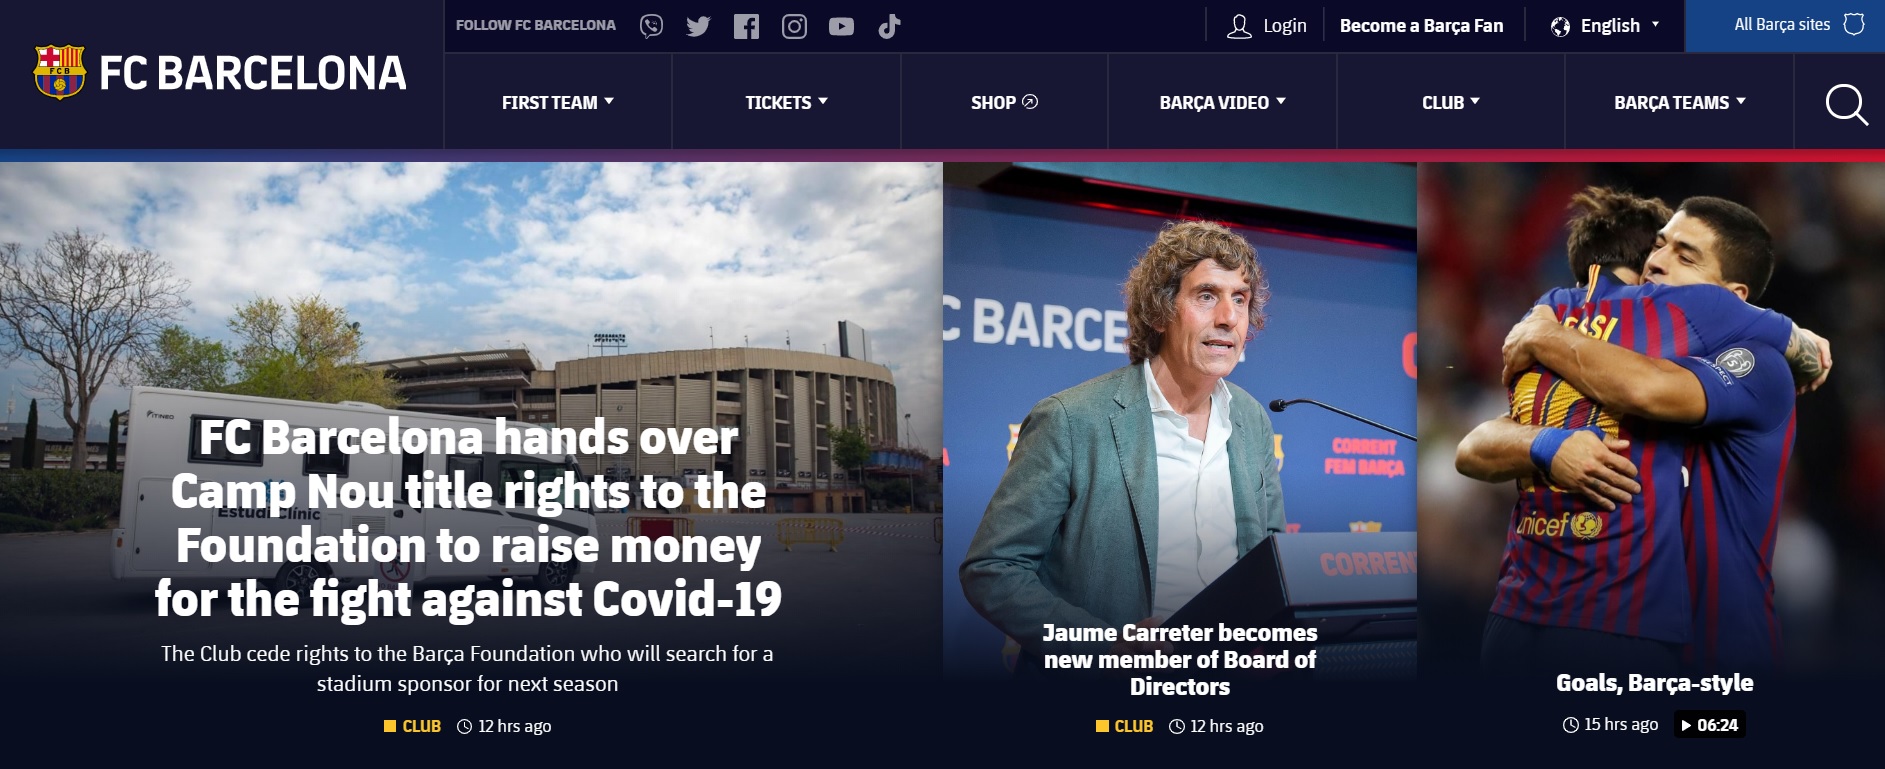 코로나19 극복 기금 마련을 위해 홈경기장 네이밍 스폰서십 판매를 발표한 FC바르셀로나 홈페이지.